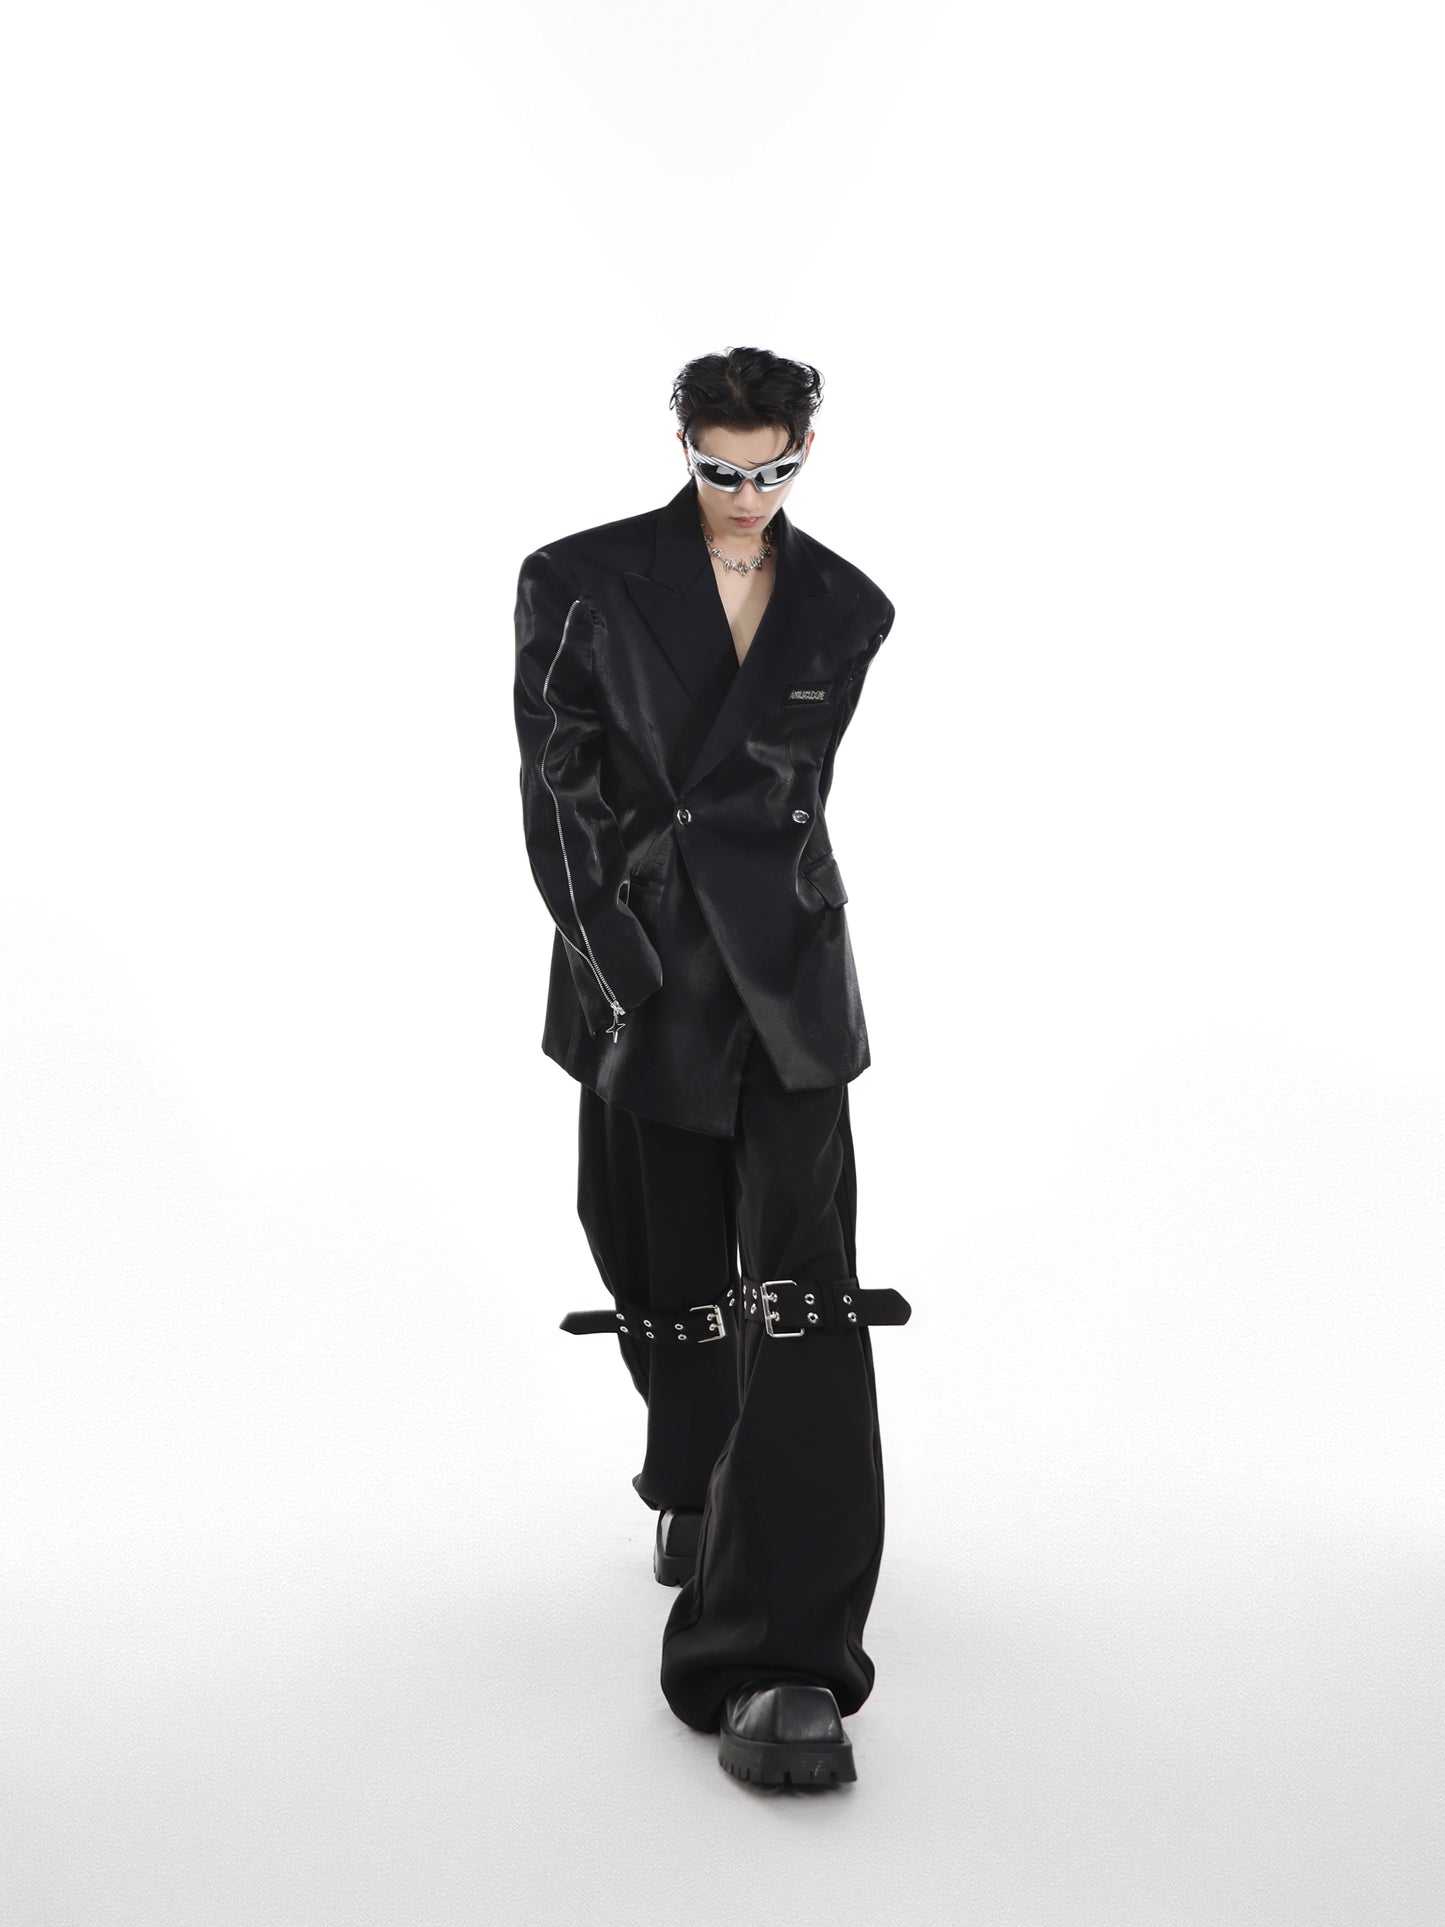 CulturE niche deconstruction liquid streamer shoulder pad silhouette suit jacket metal zipper design suit men